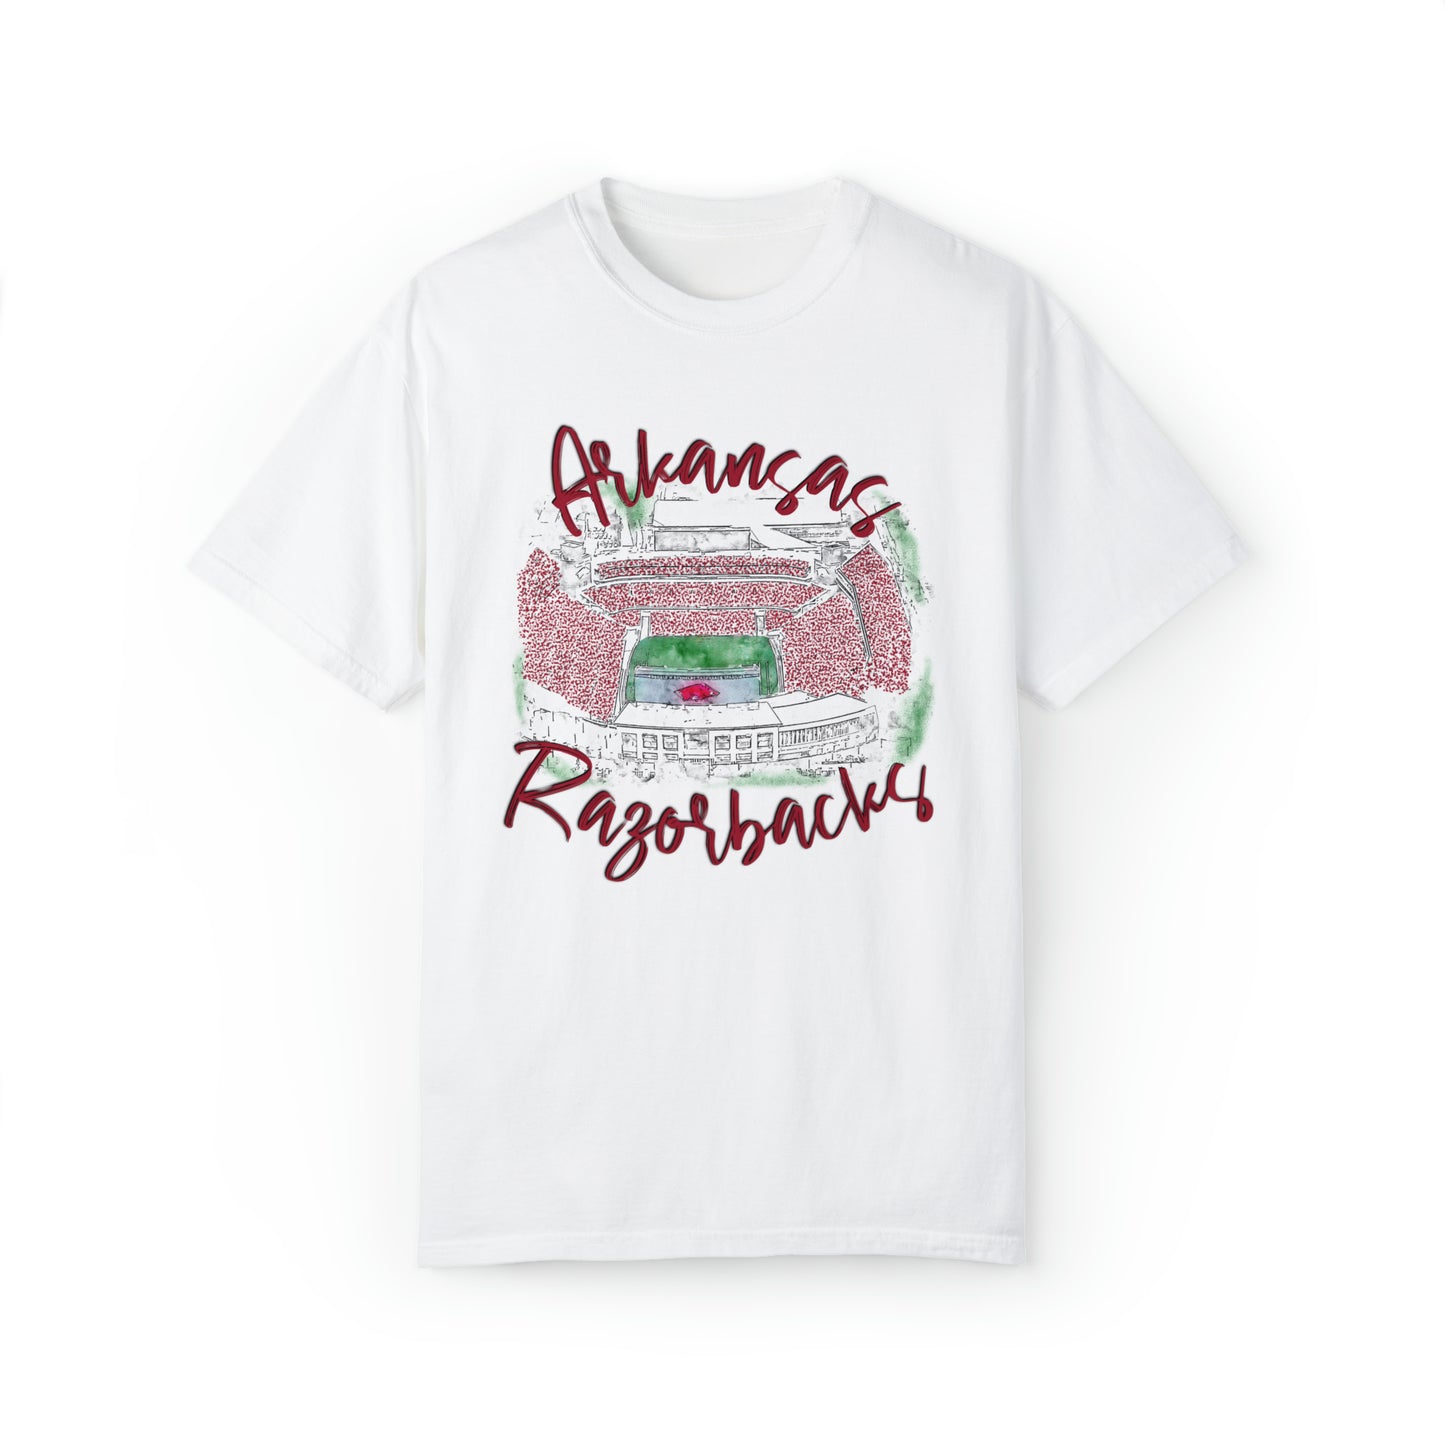 Arkansas Razorback Shirt